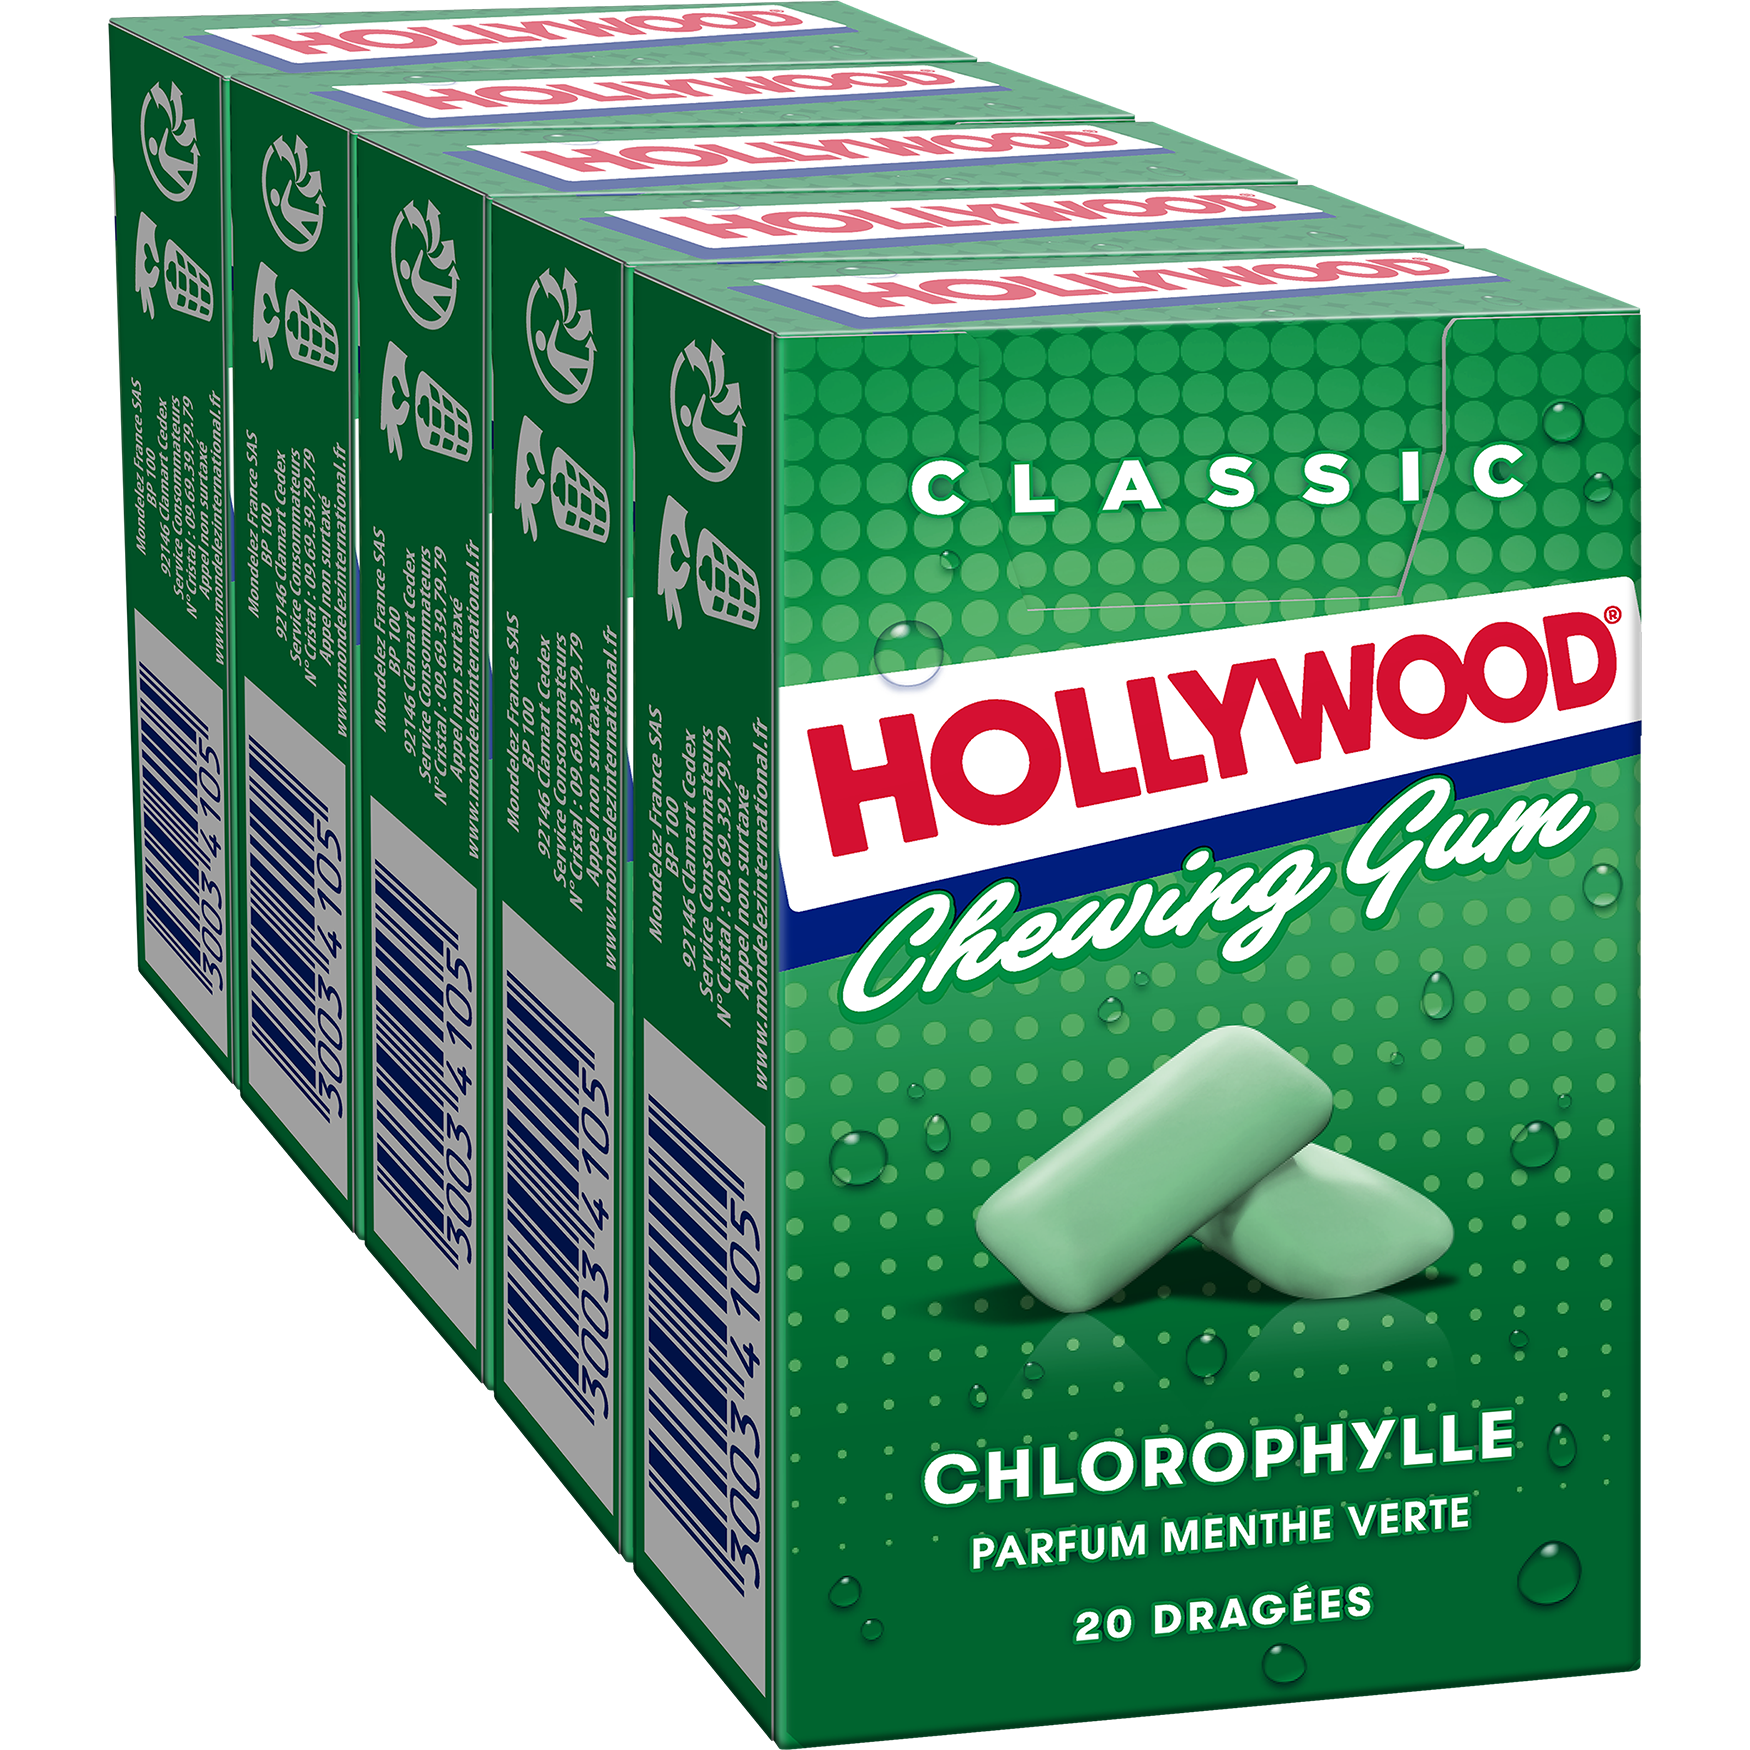 Freedent - Chewing-gum chlorophylle 5 x 10 dragées - Supermarchés